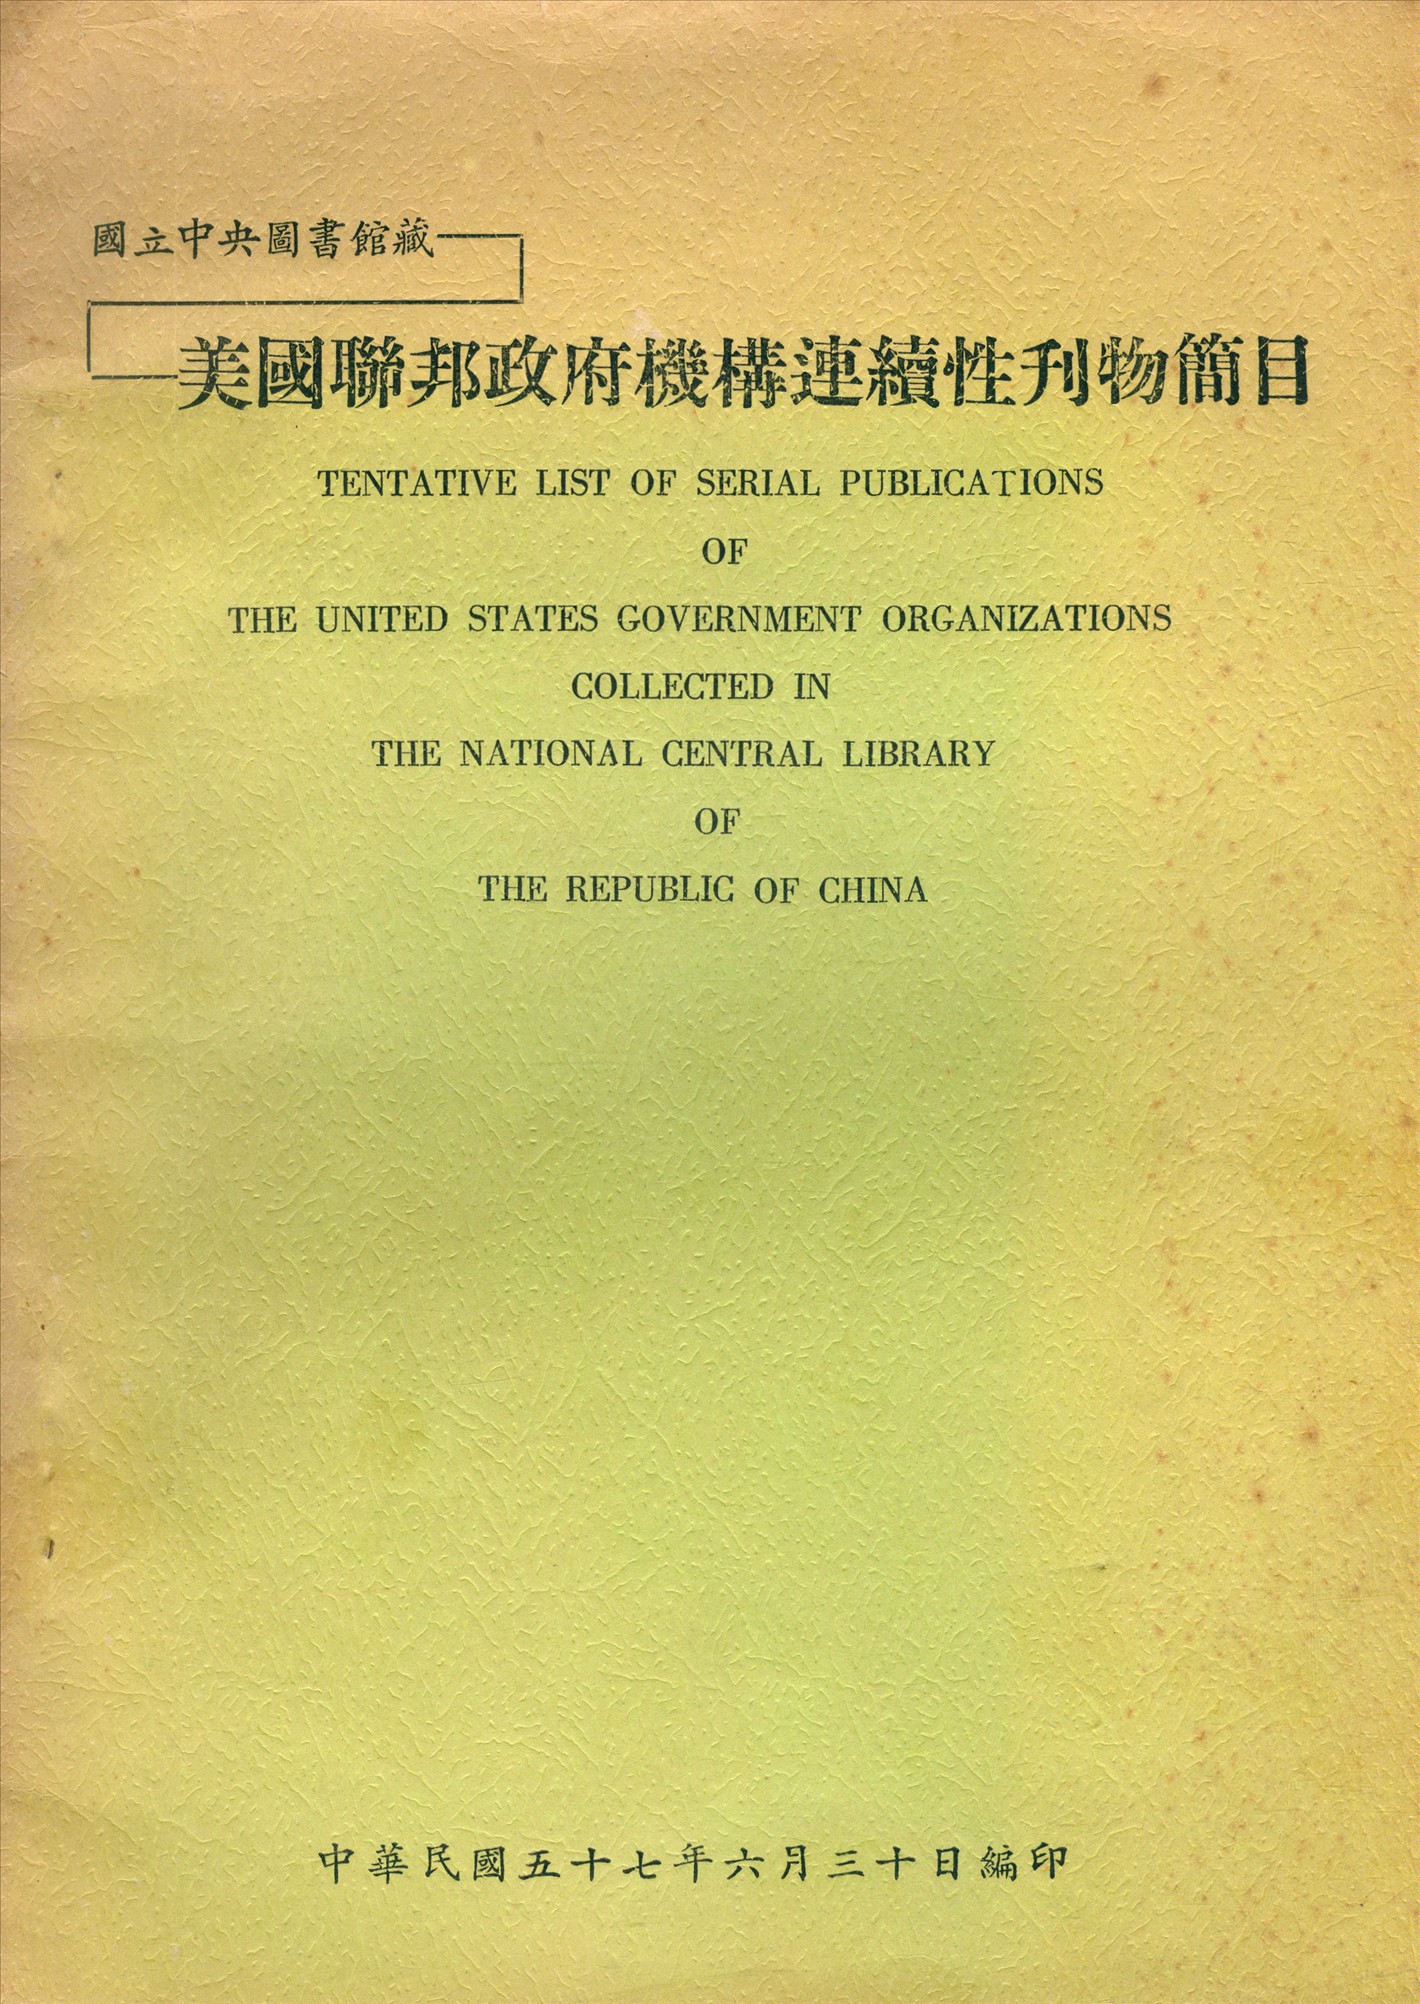 國立中央圖書館藏美國聯邦政府機構連續性刊物簡目